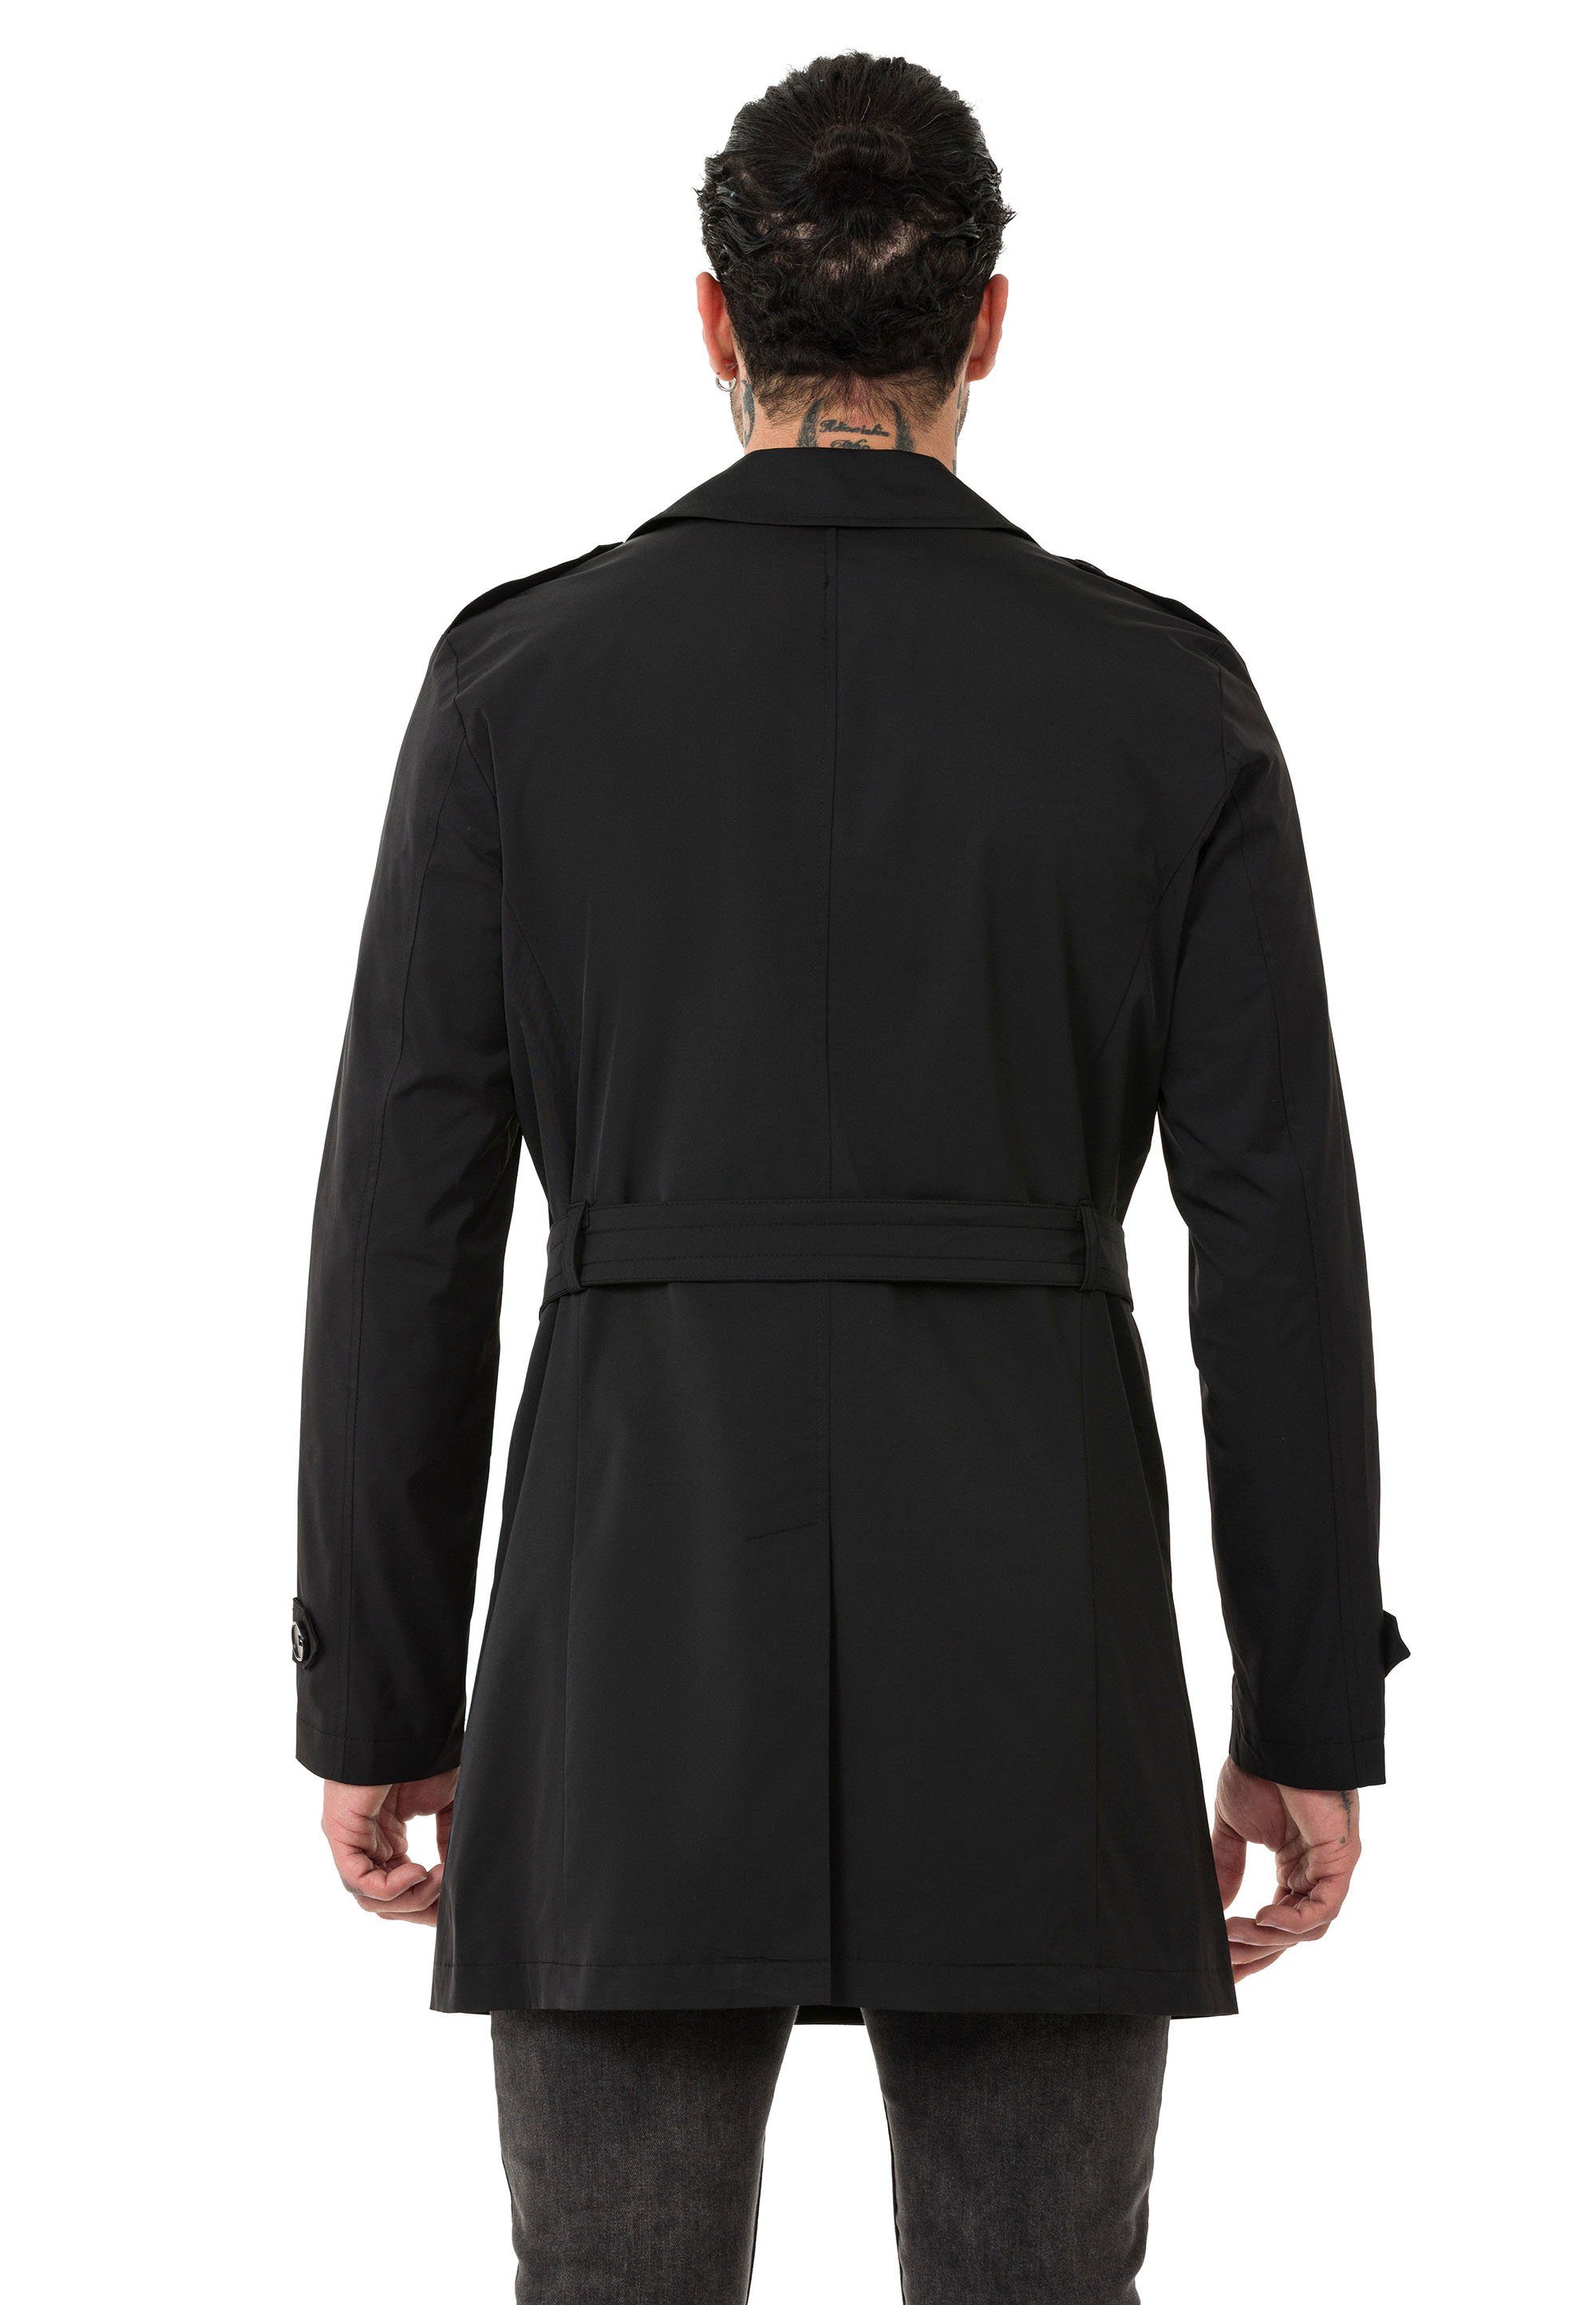 Schwarz Qualität Mantel Premium Trenchcoat mit RedBridge Gürtelschnalle